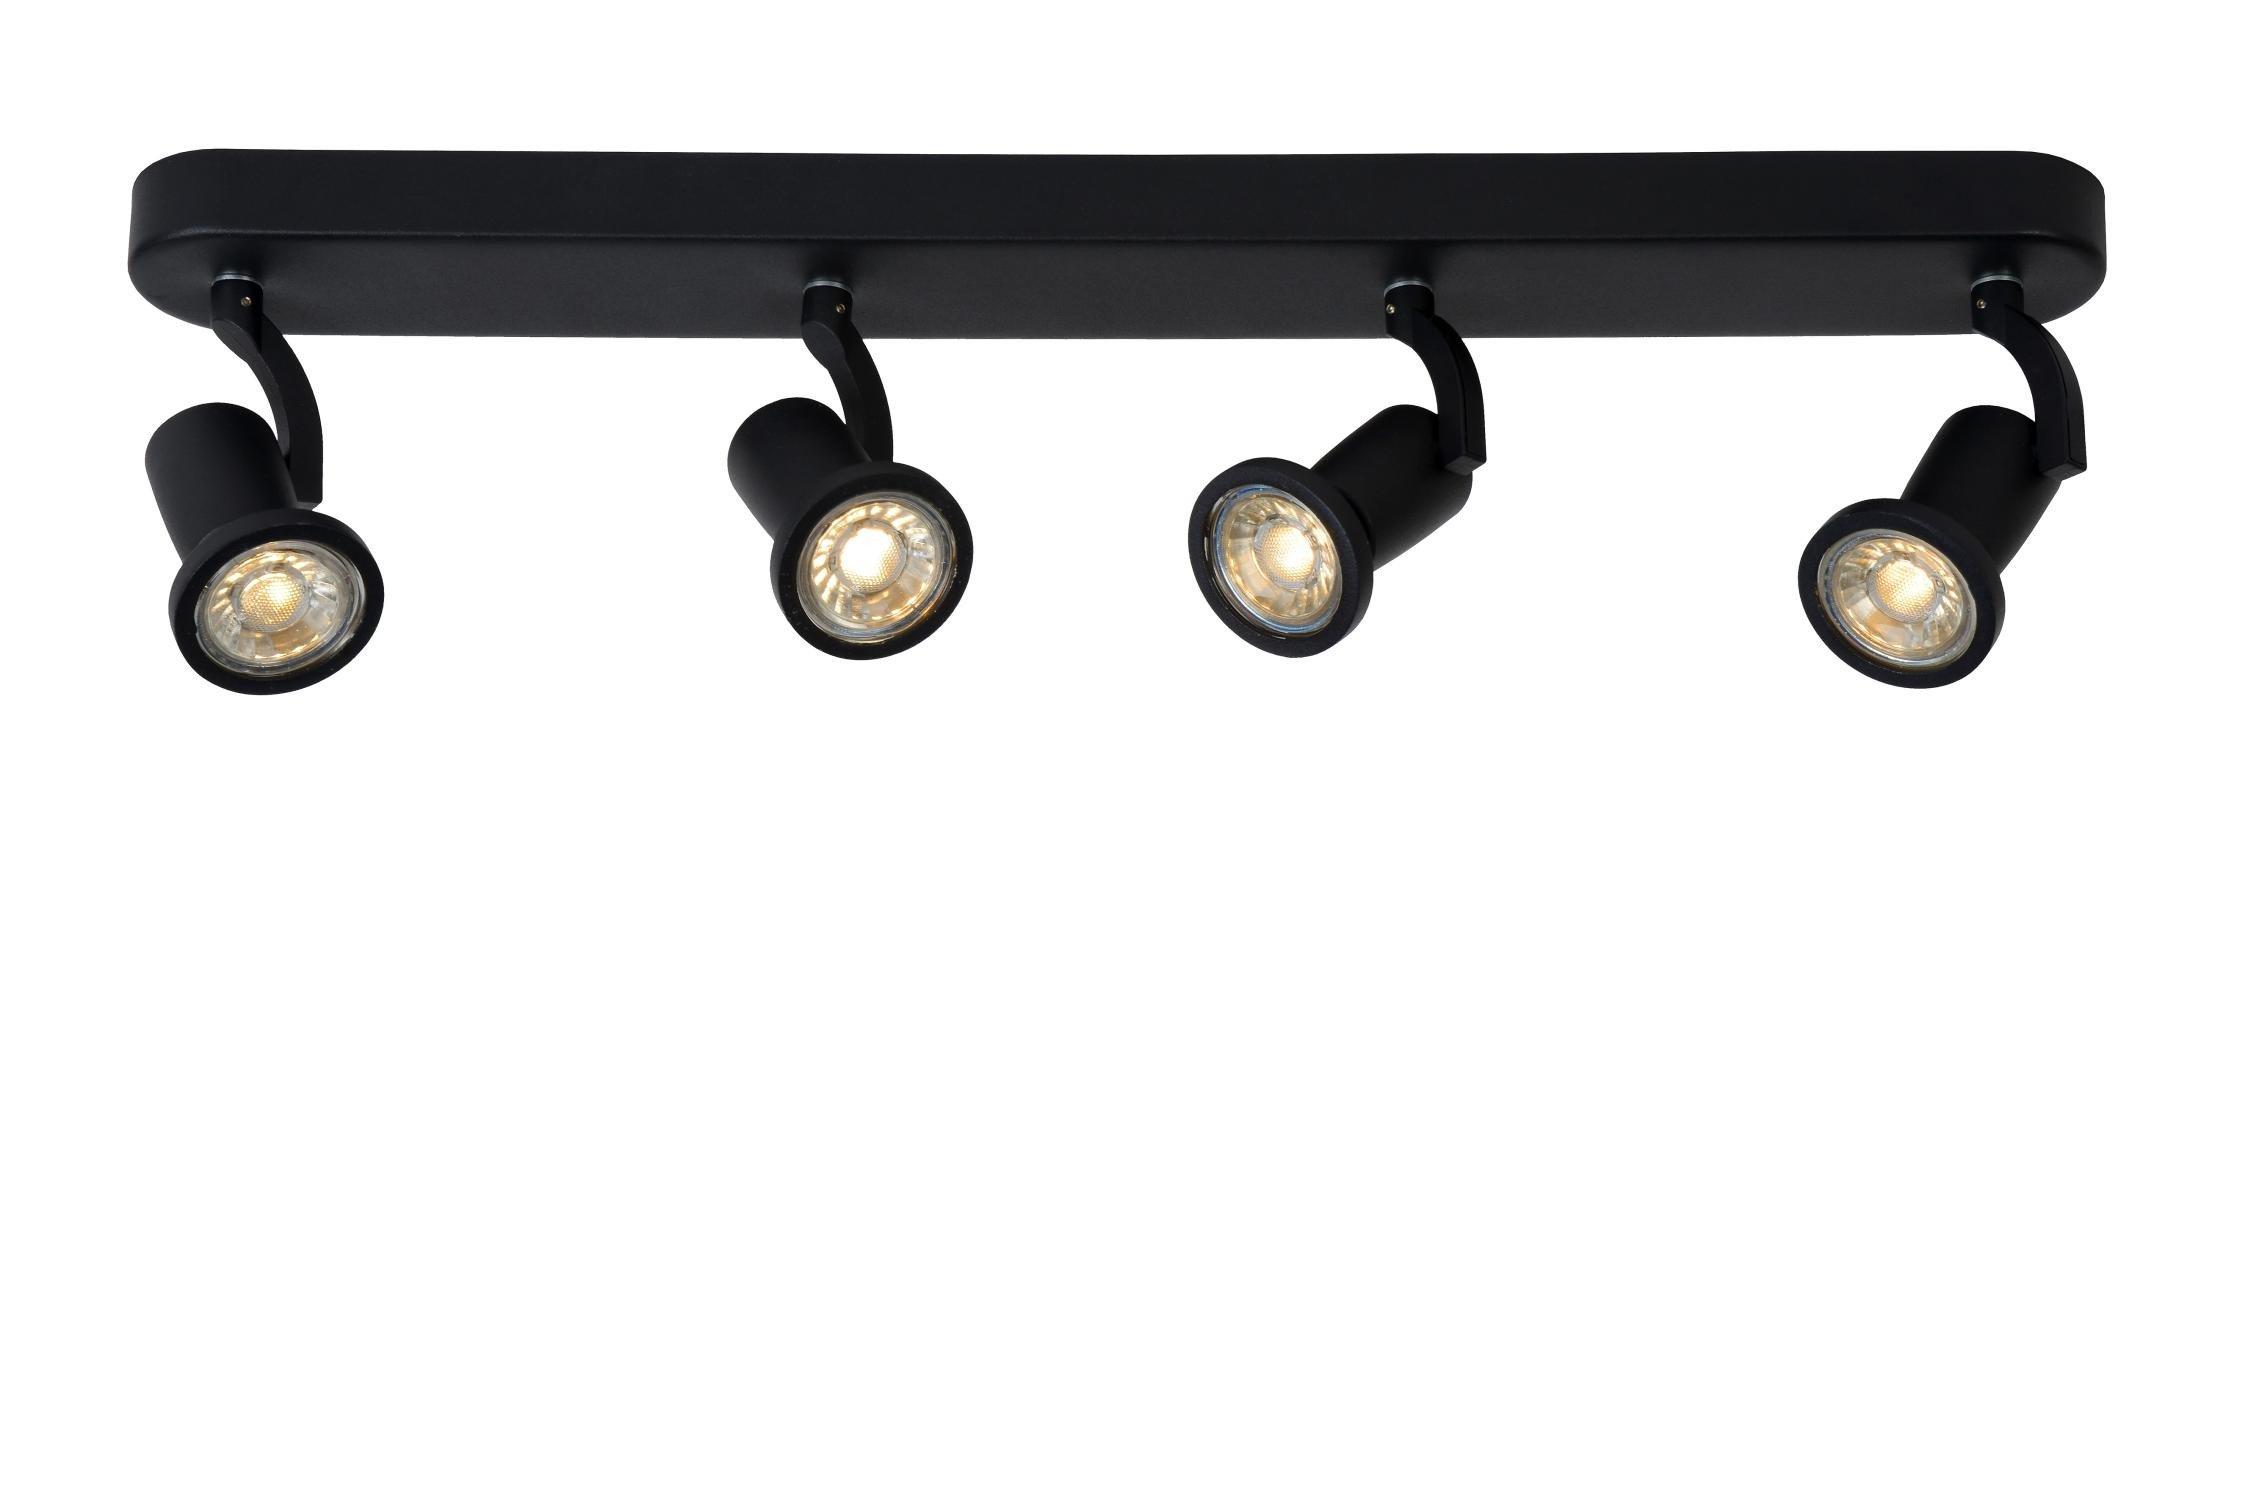 Lucide JasterLed Modern Ceiling Spotlight Bar LED GU10 4x5W 2700K Black